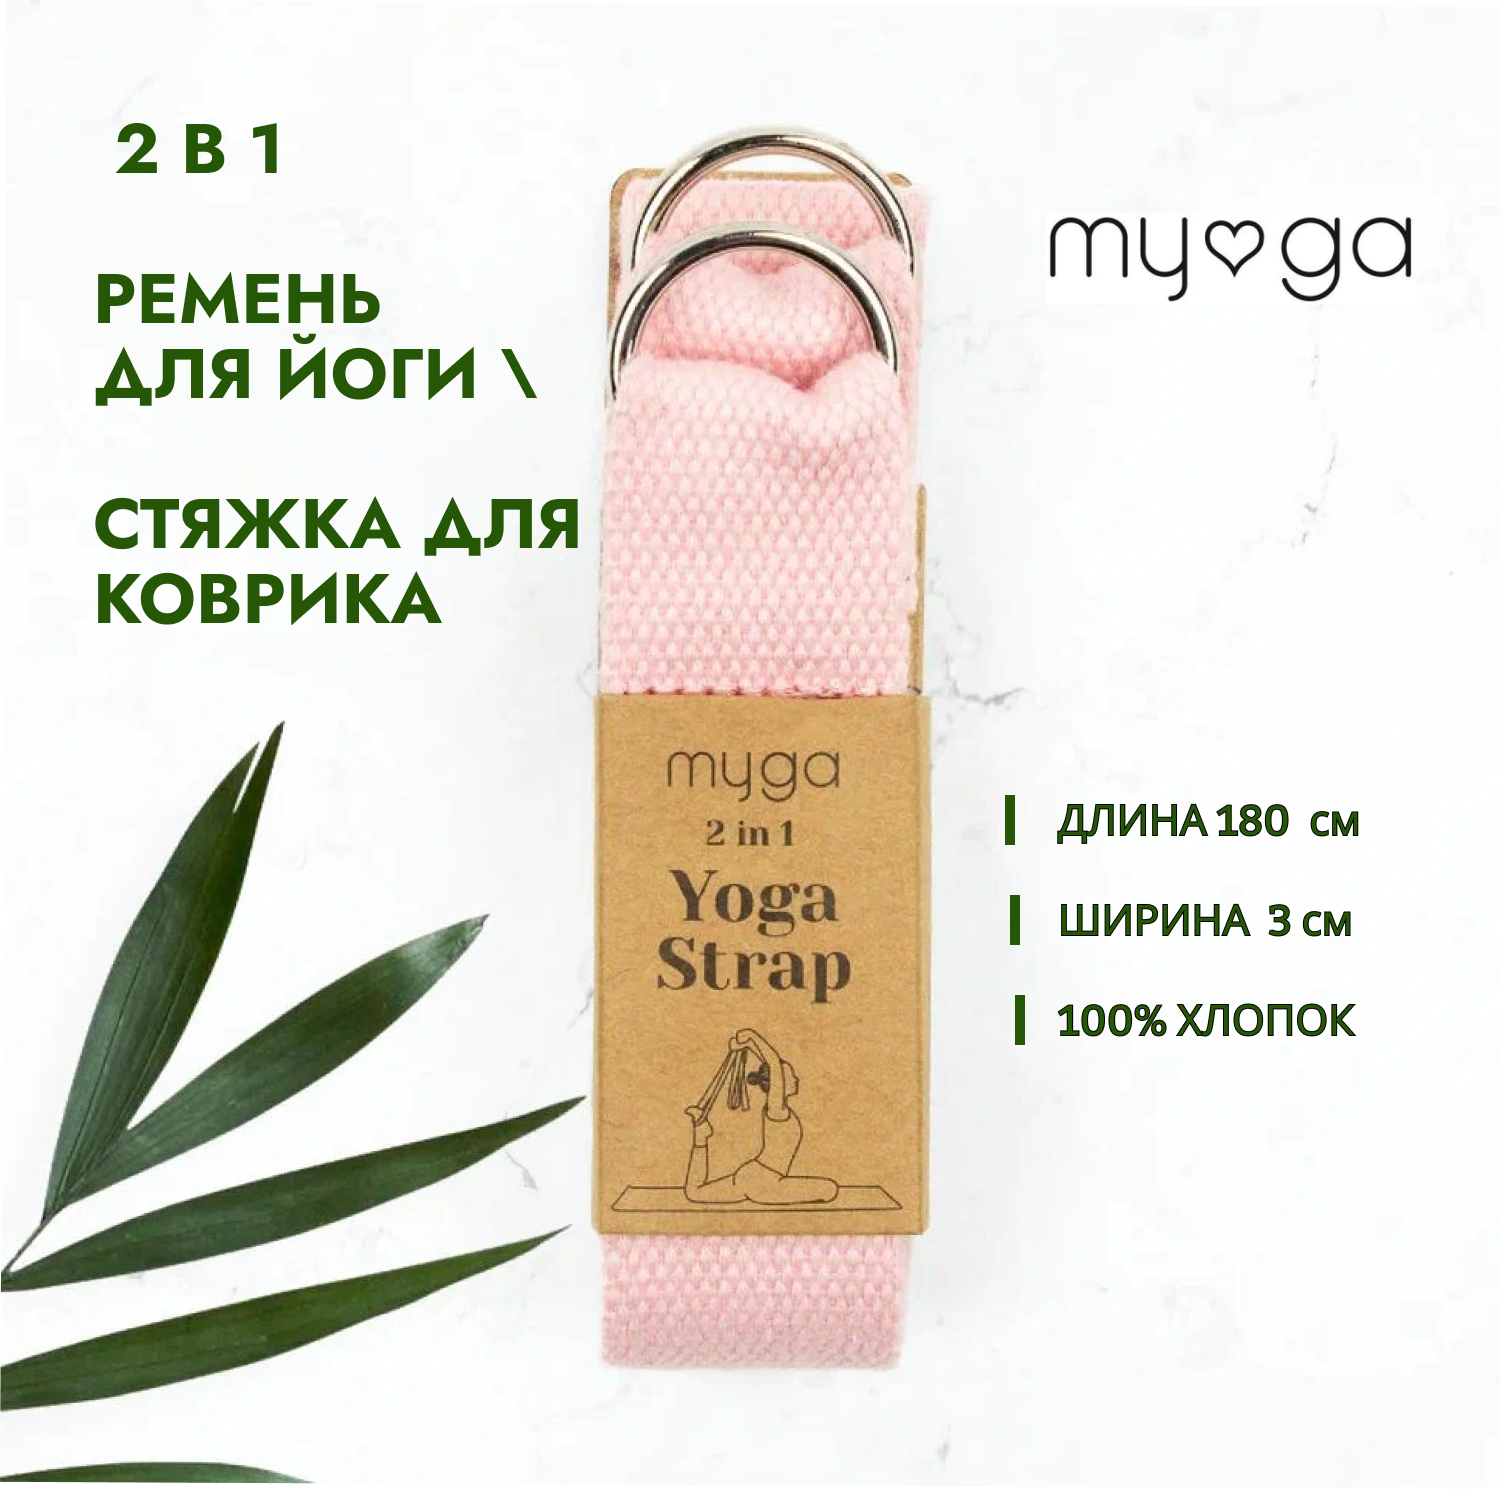 2 в 1 Ремень для йоги/ Стяжка для коврика MYGA , длина 180 см, розовый